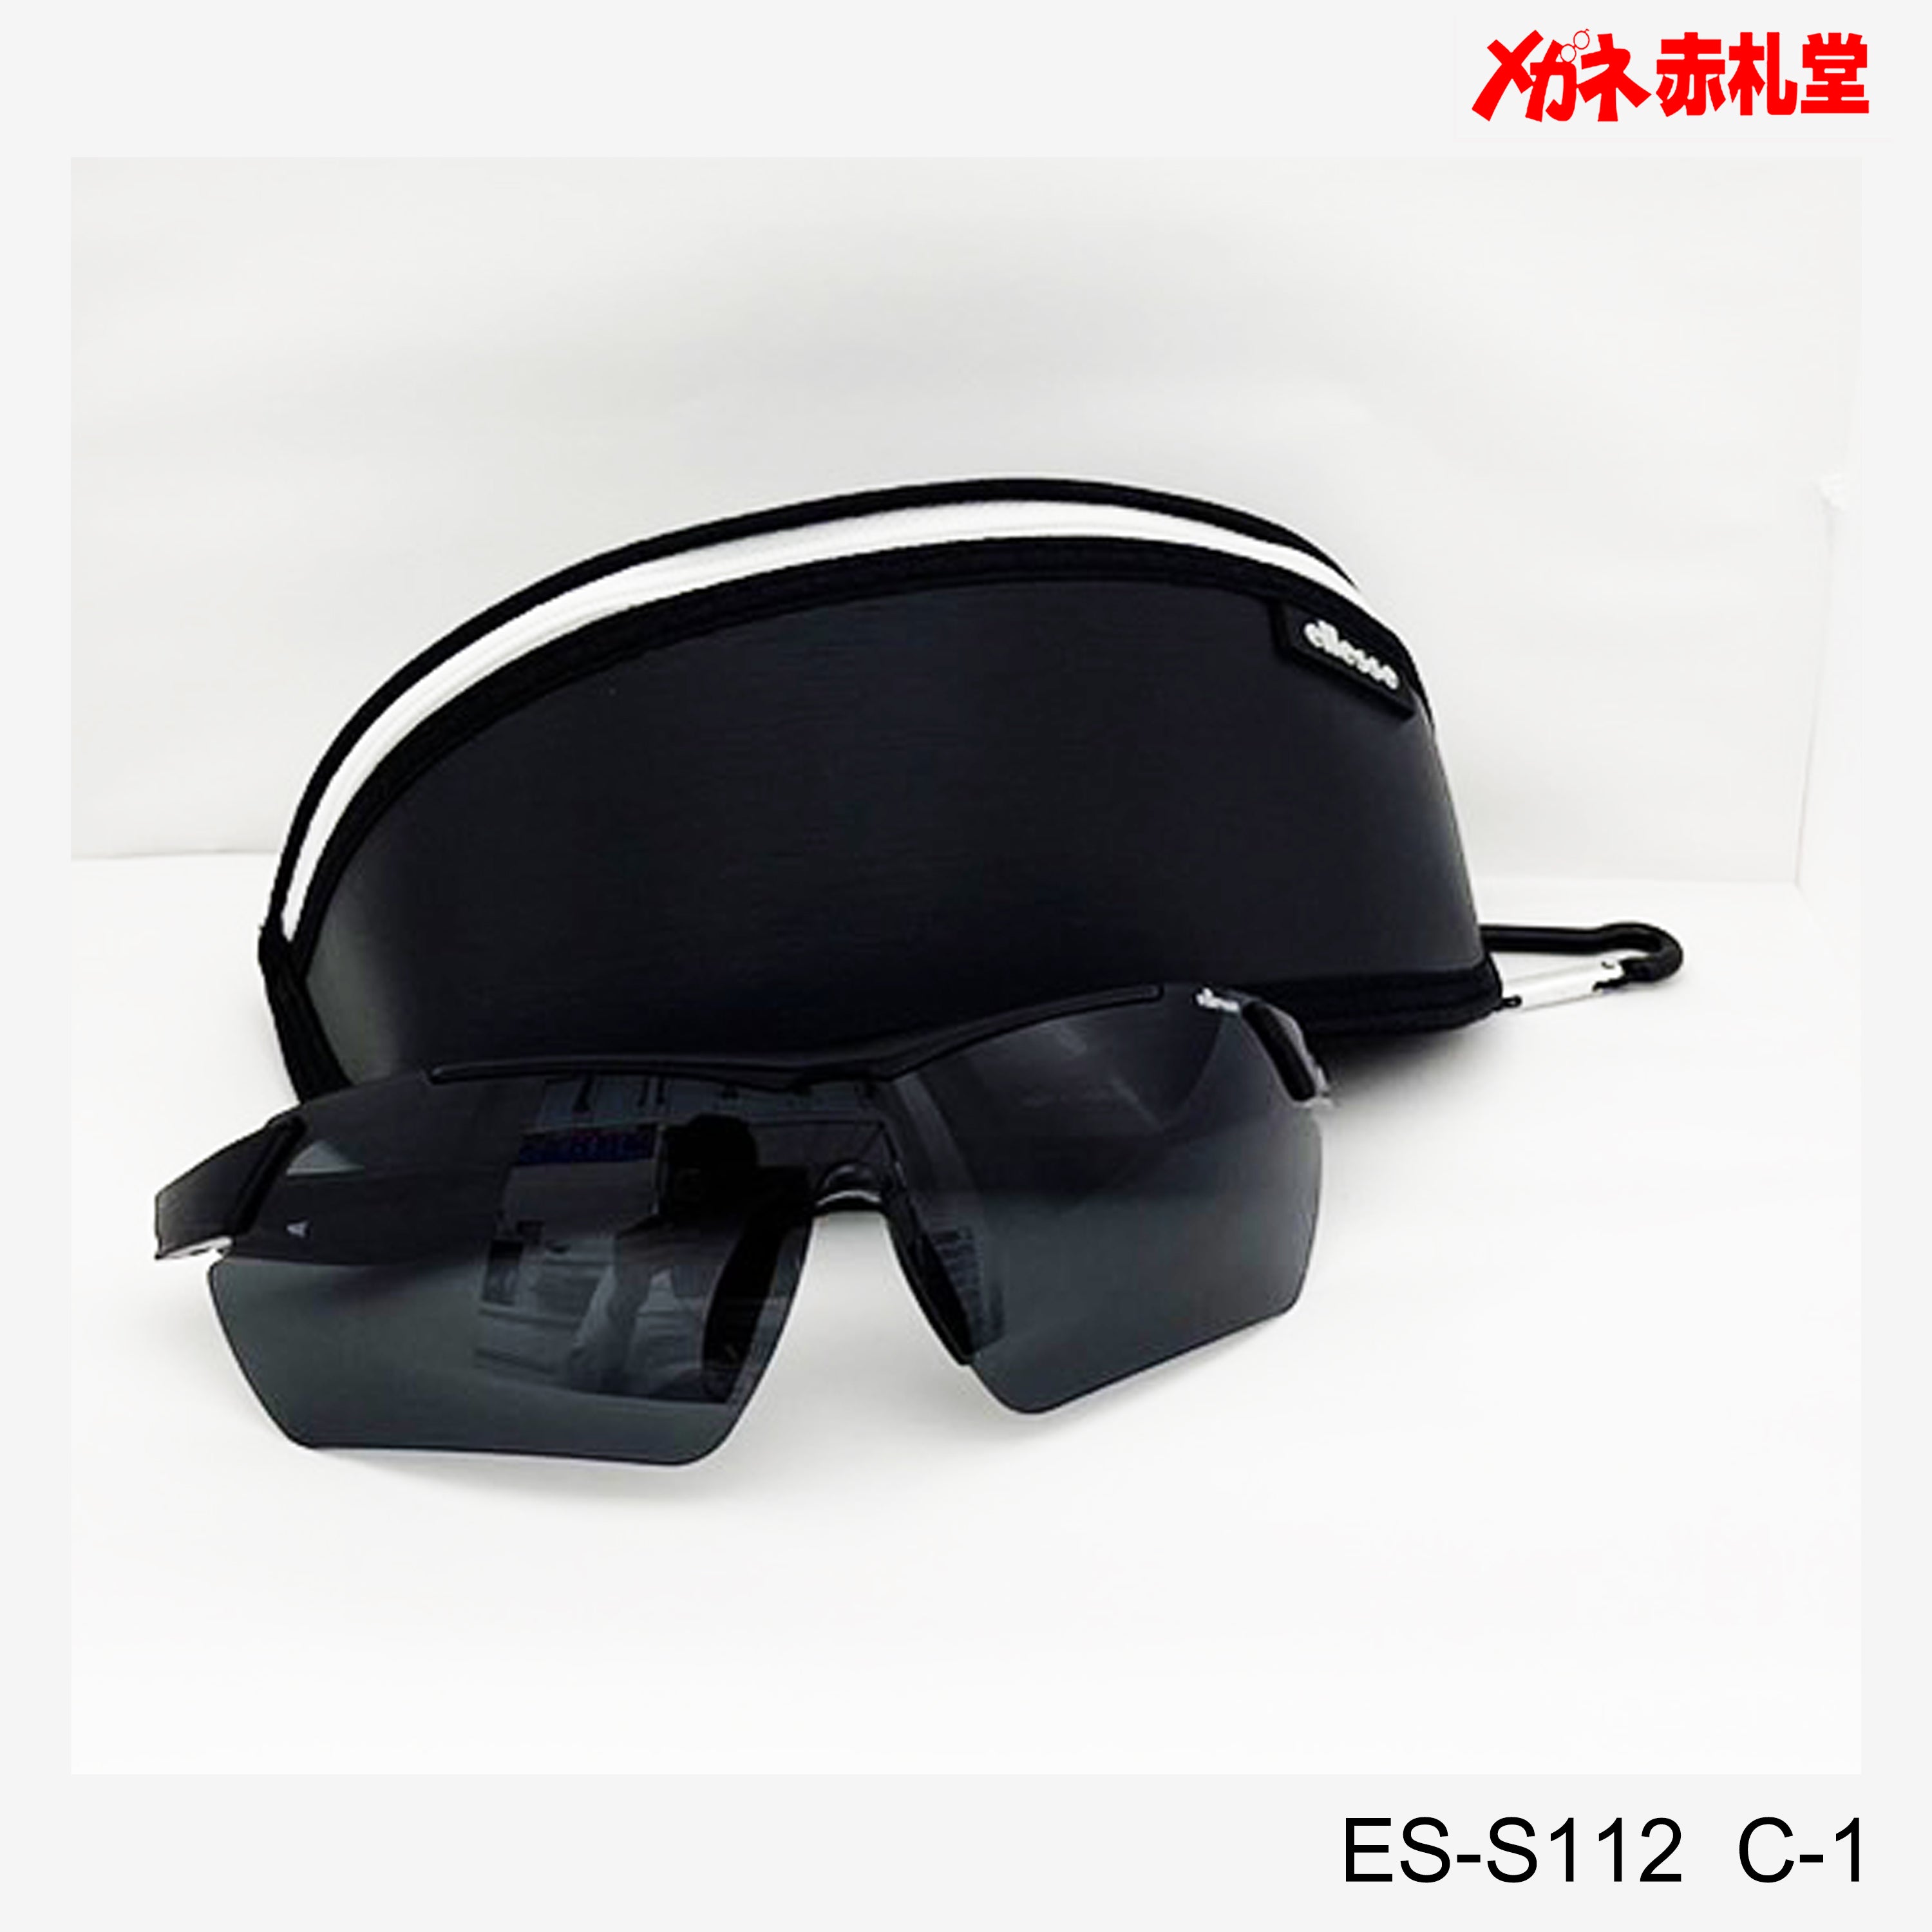 6000円 ellesse 度付対応スポーツサングラス 取替レンズ付 ES-S112 